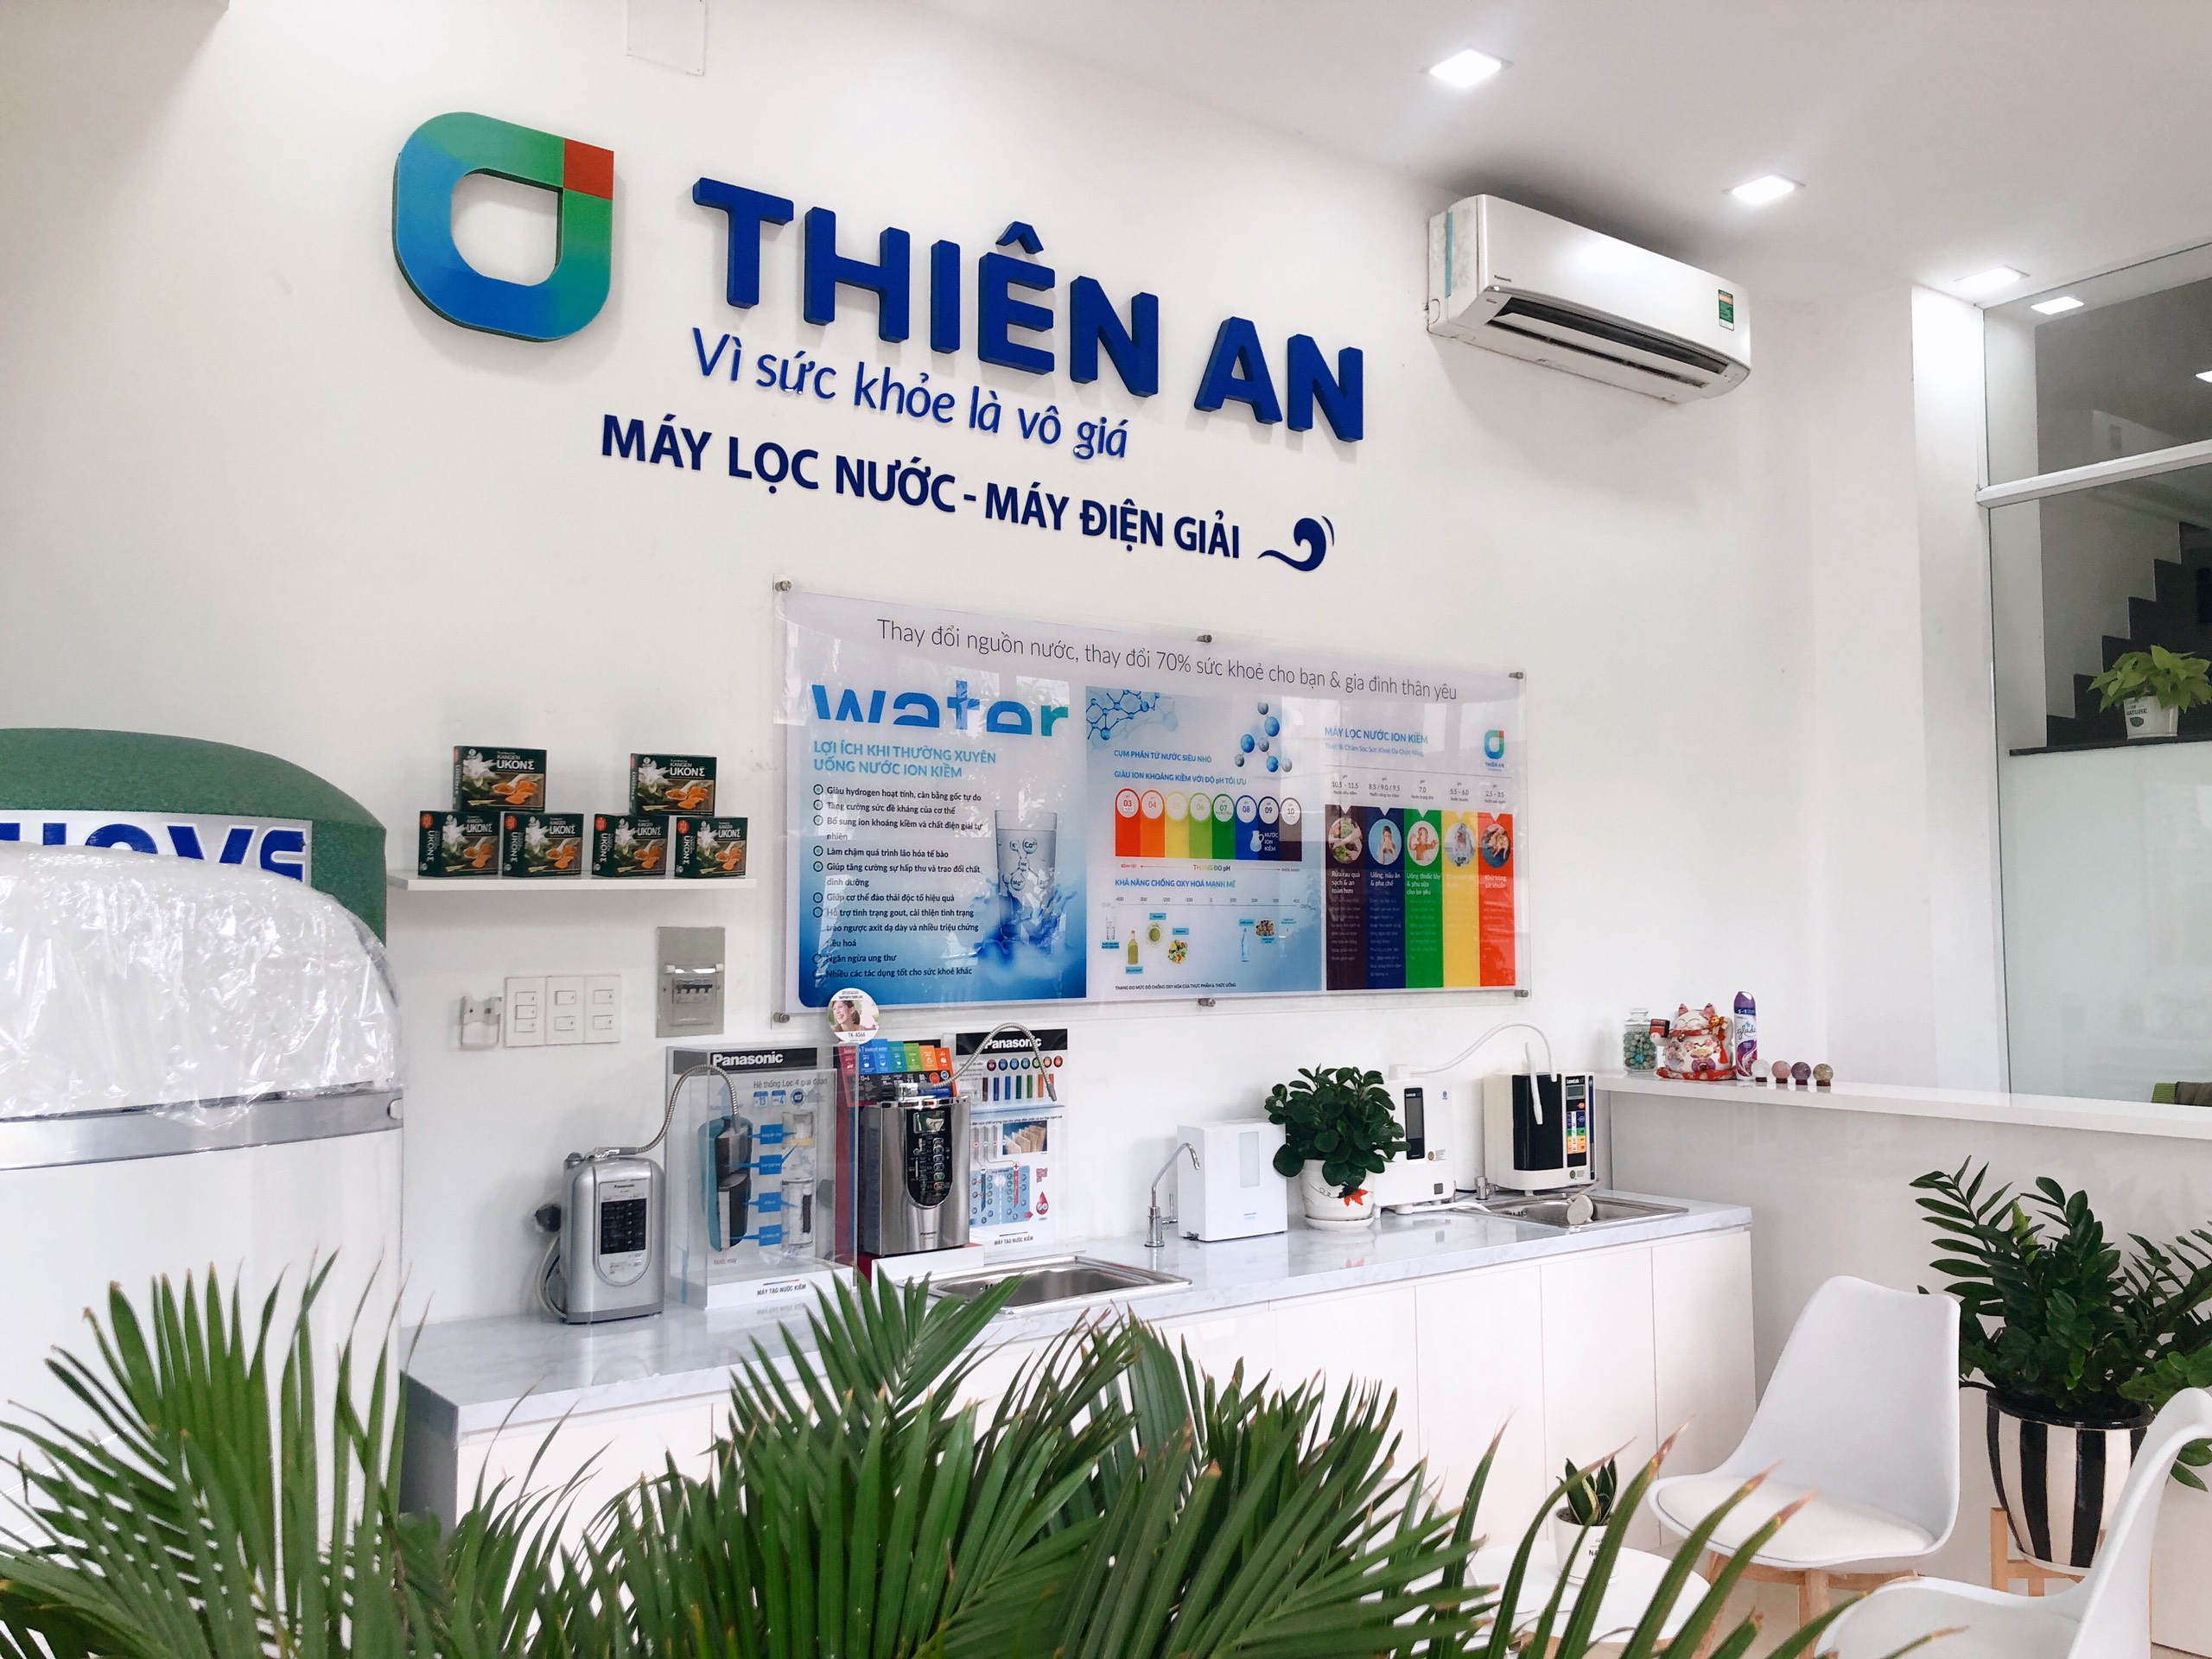 Thiên An - NPP máy lọc nước hàng đầu Việt Nam